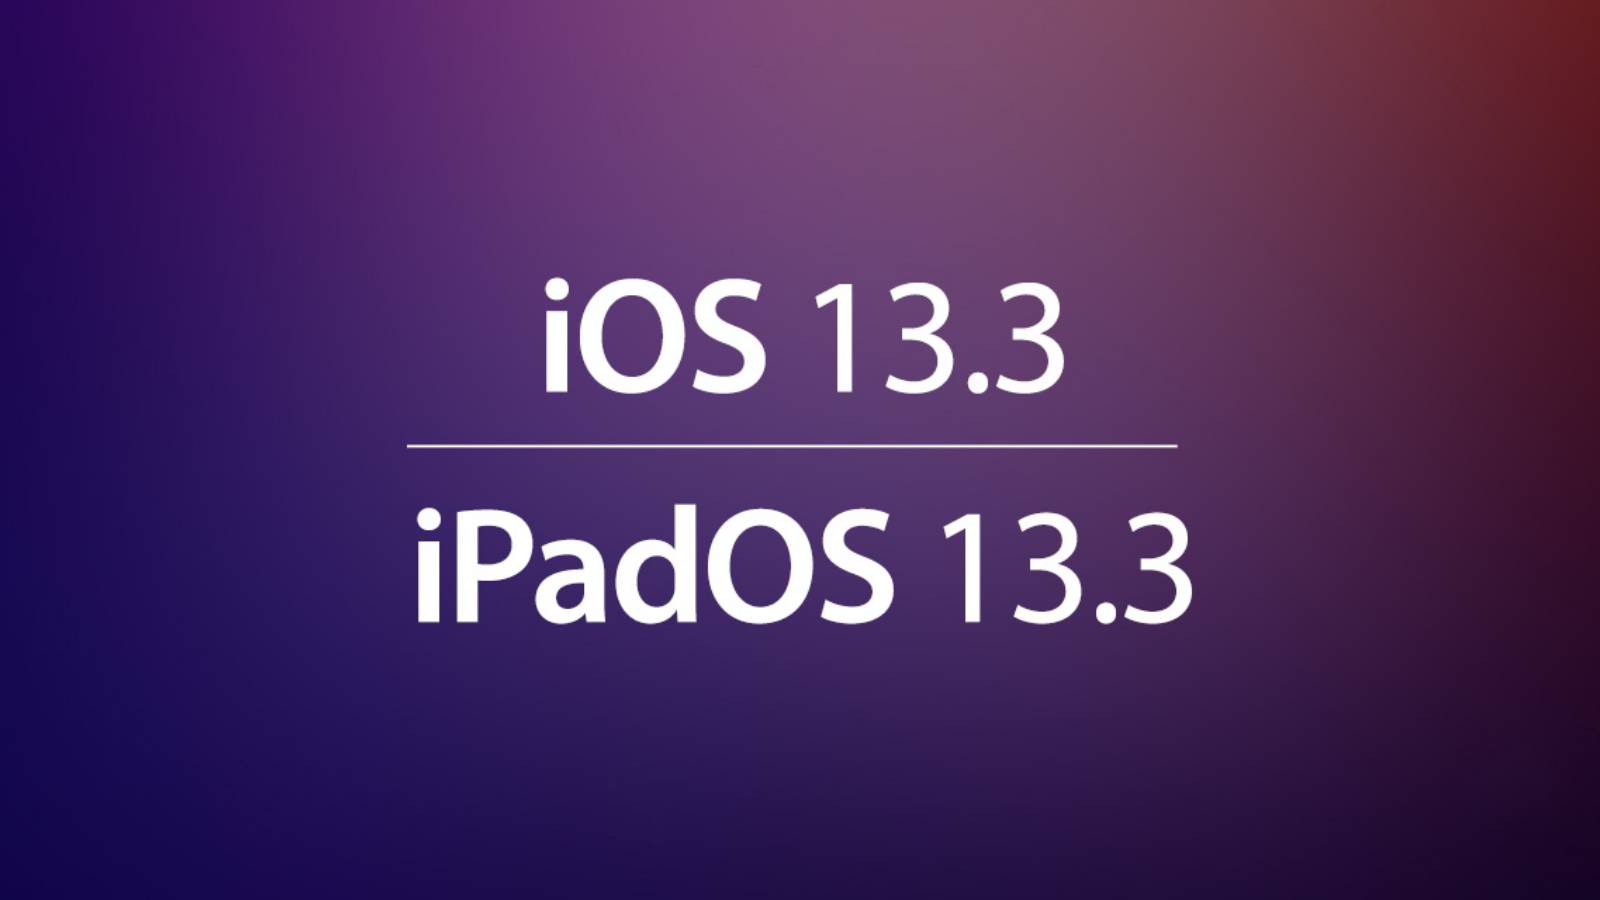 iOS 13.3